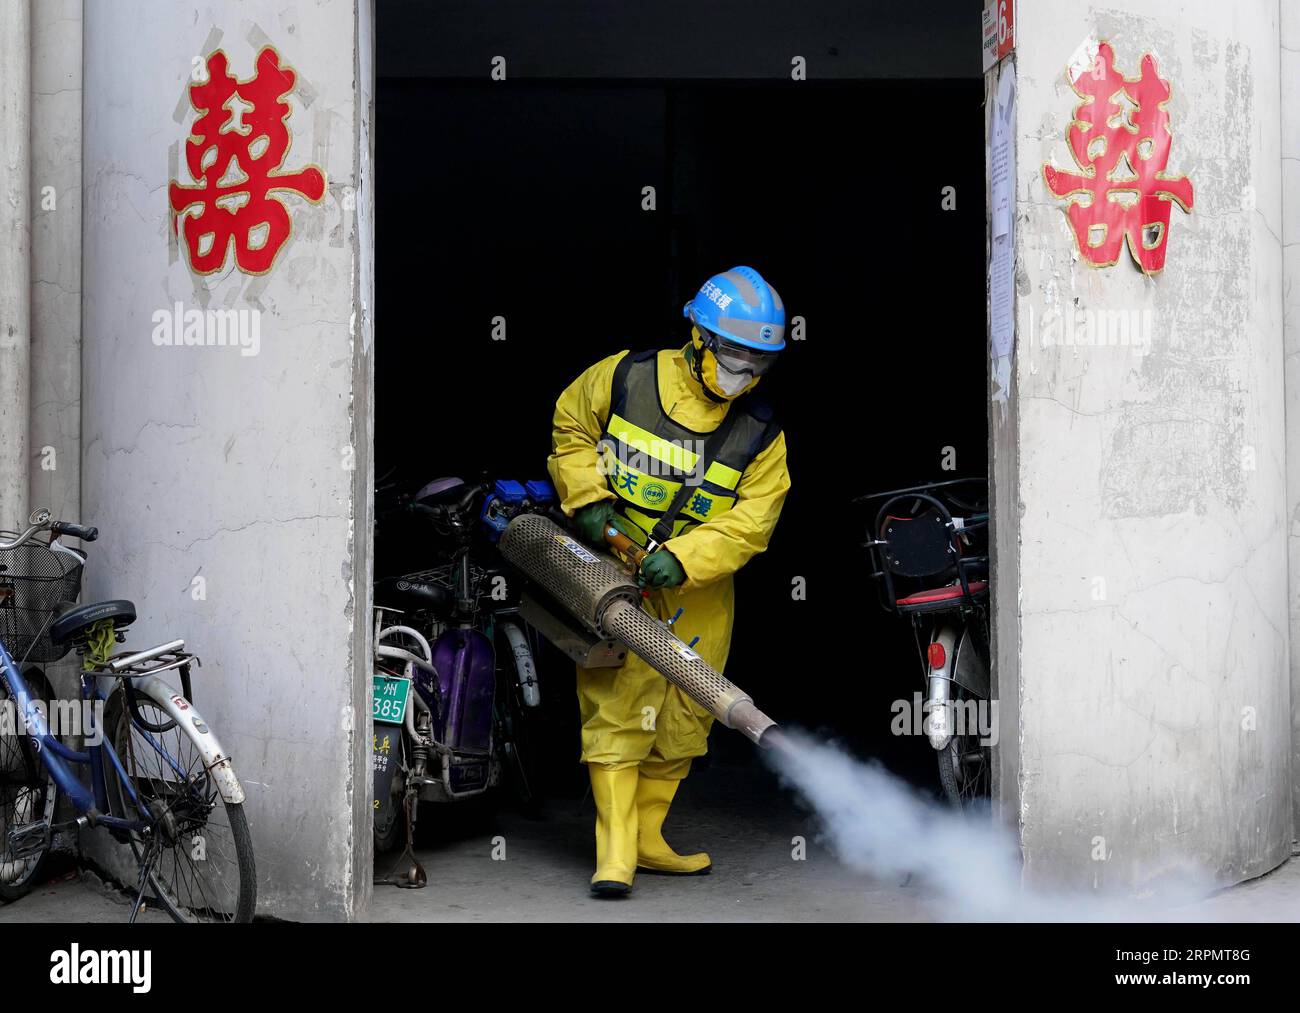 200217 -- ZHENGZHOU, 17. Februar 2020 -- Freiwilliger Li Jian, Mitglied des Zhengzhou Blue Sky RescueBSR-Teams, führt am 16. Februar 2020 eine Desinfektionsoperation in einer Gemeinde in Zhengzhou in der zentralchinesischen Provinz Henan durch. Das BSR-Team Zhengzhou, eine nichtstaatliche humanitäre Organisation, ergreift seit dem Ausbruch des neuartigen Coronavirus in China positive Maßnahmen. Die Mitglieder haben Spenden unter sich und gekauft Gesichtsmasken, Alkohol und Desinfektionsgeräte, um zu desinfizieren pubilic Orte und Gemeinden zu helfen. Li Jian und seine Frau Huang Jun, ein Paar, das beide in der Te arbeitet Stockfoto